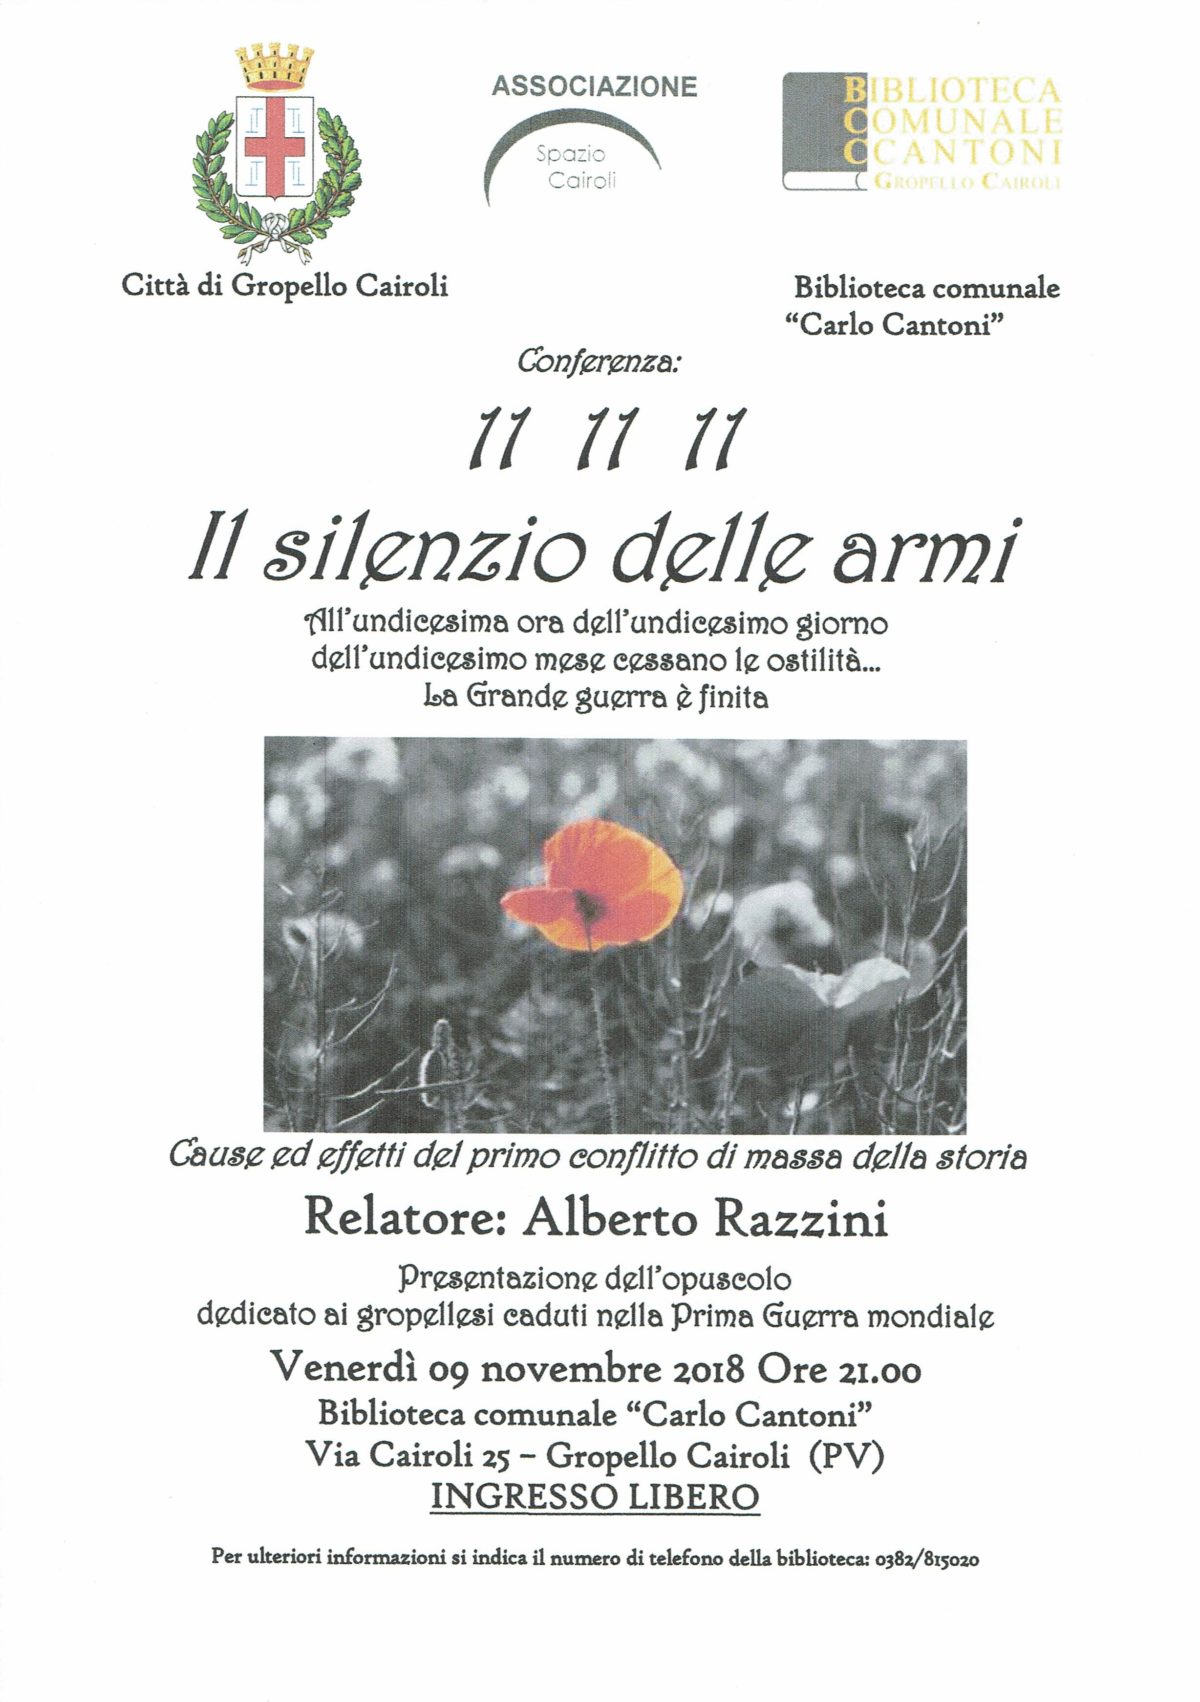 Biblioteca di Gropello Cairoli: venerdì 9 novembre ore 21,00 conferenza “11 11 11: il silenzio delle armi” a cura di Alberto Razzini